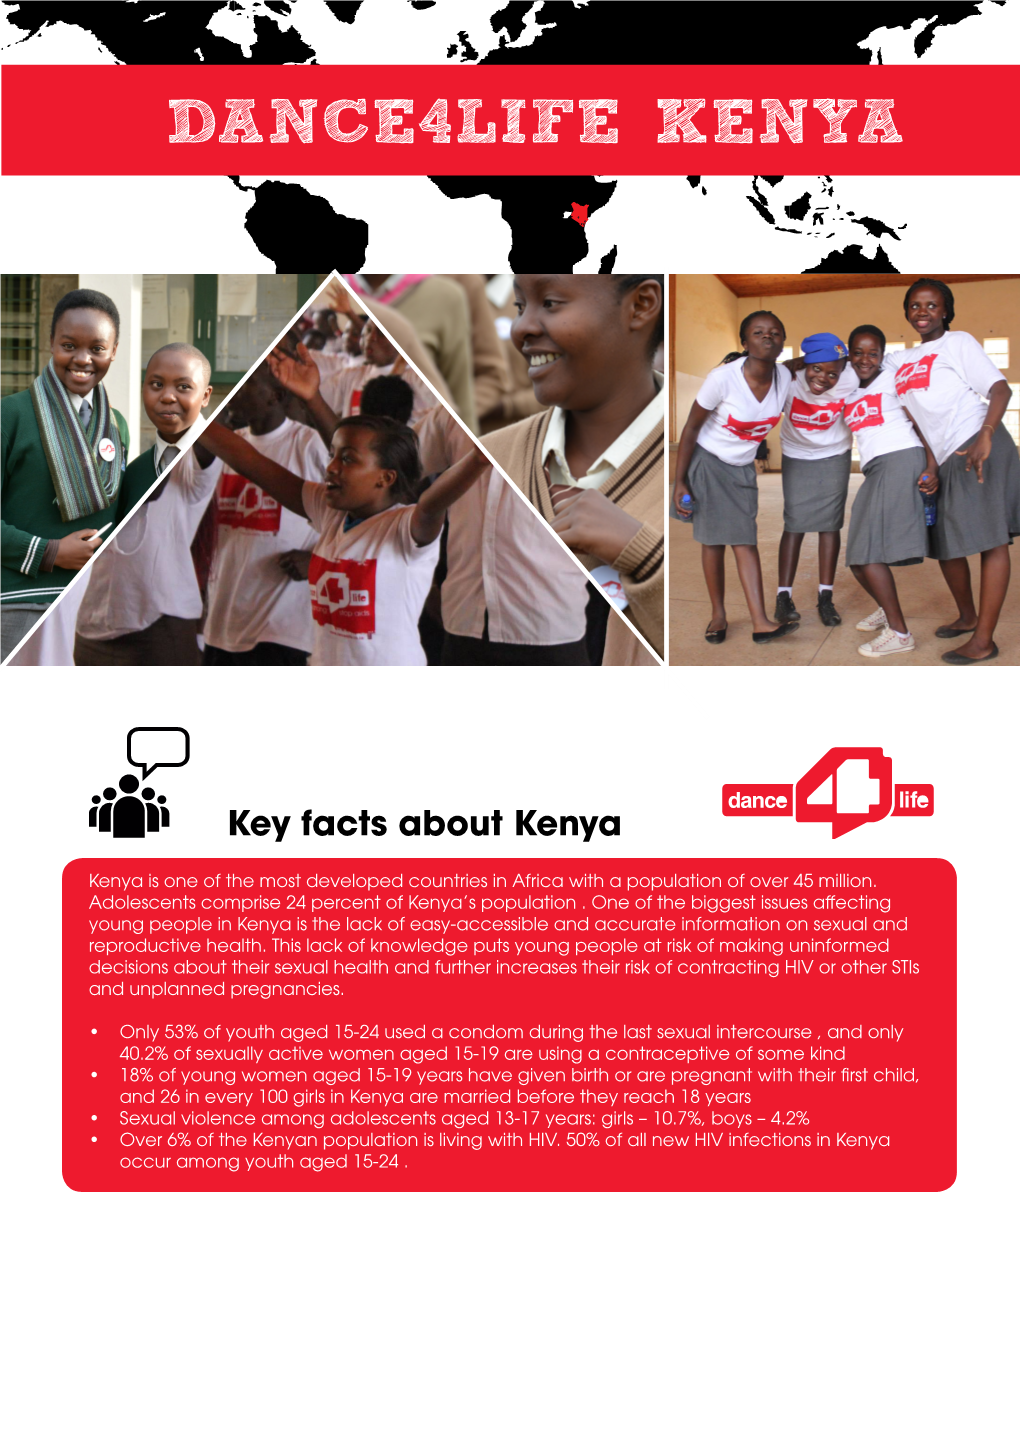 Dance4life Kenya